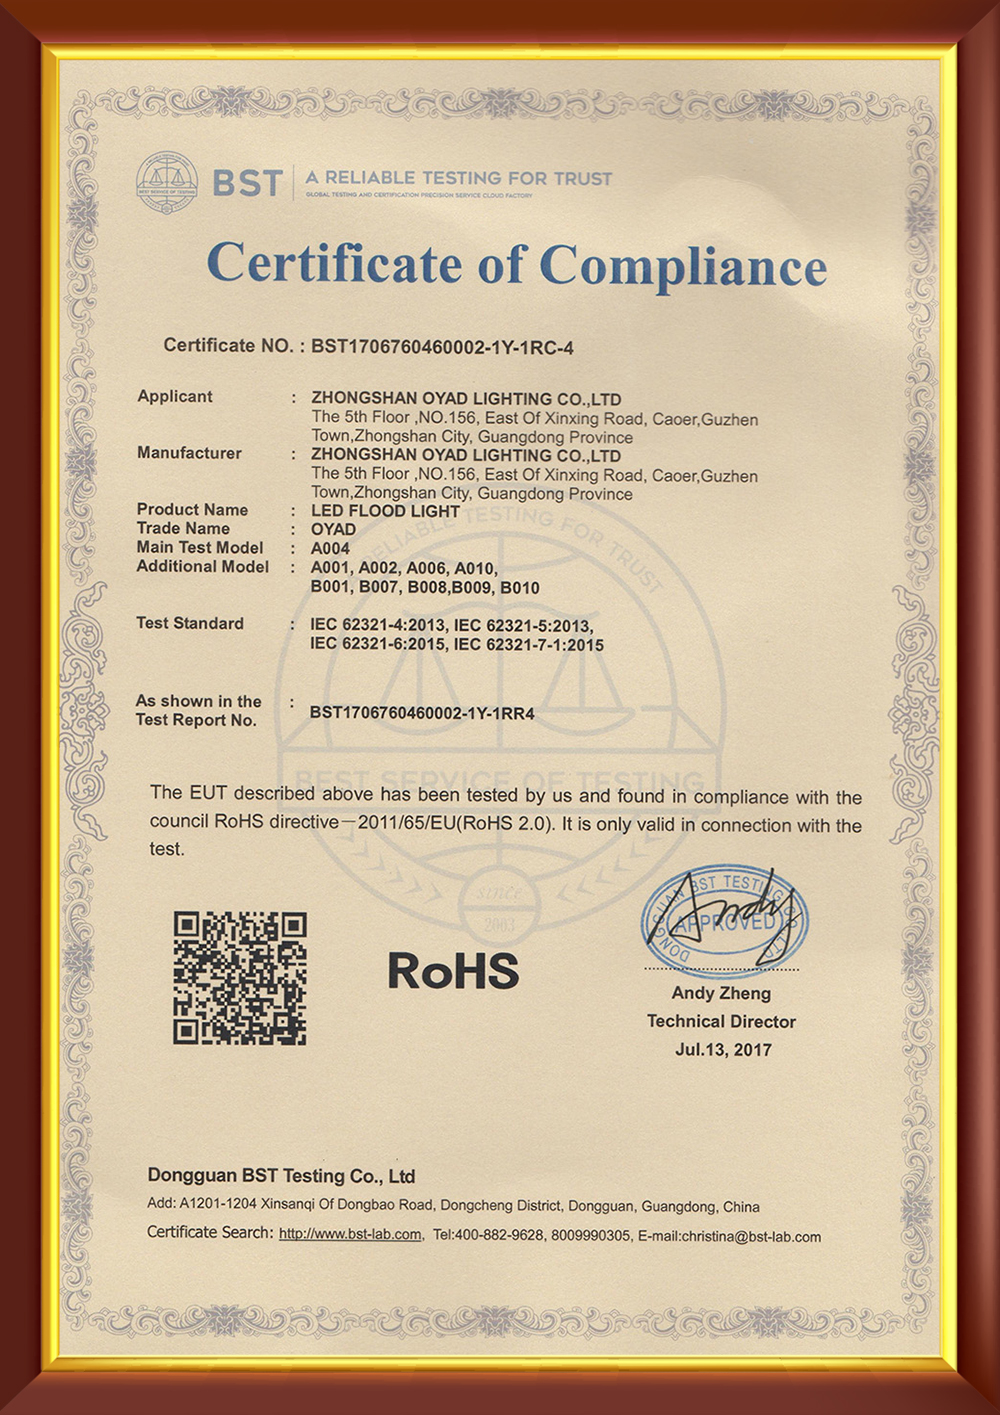 ROHS-Flood Light Certificate